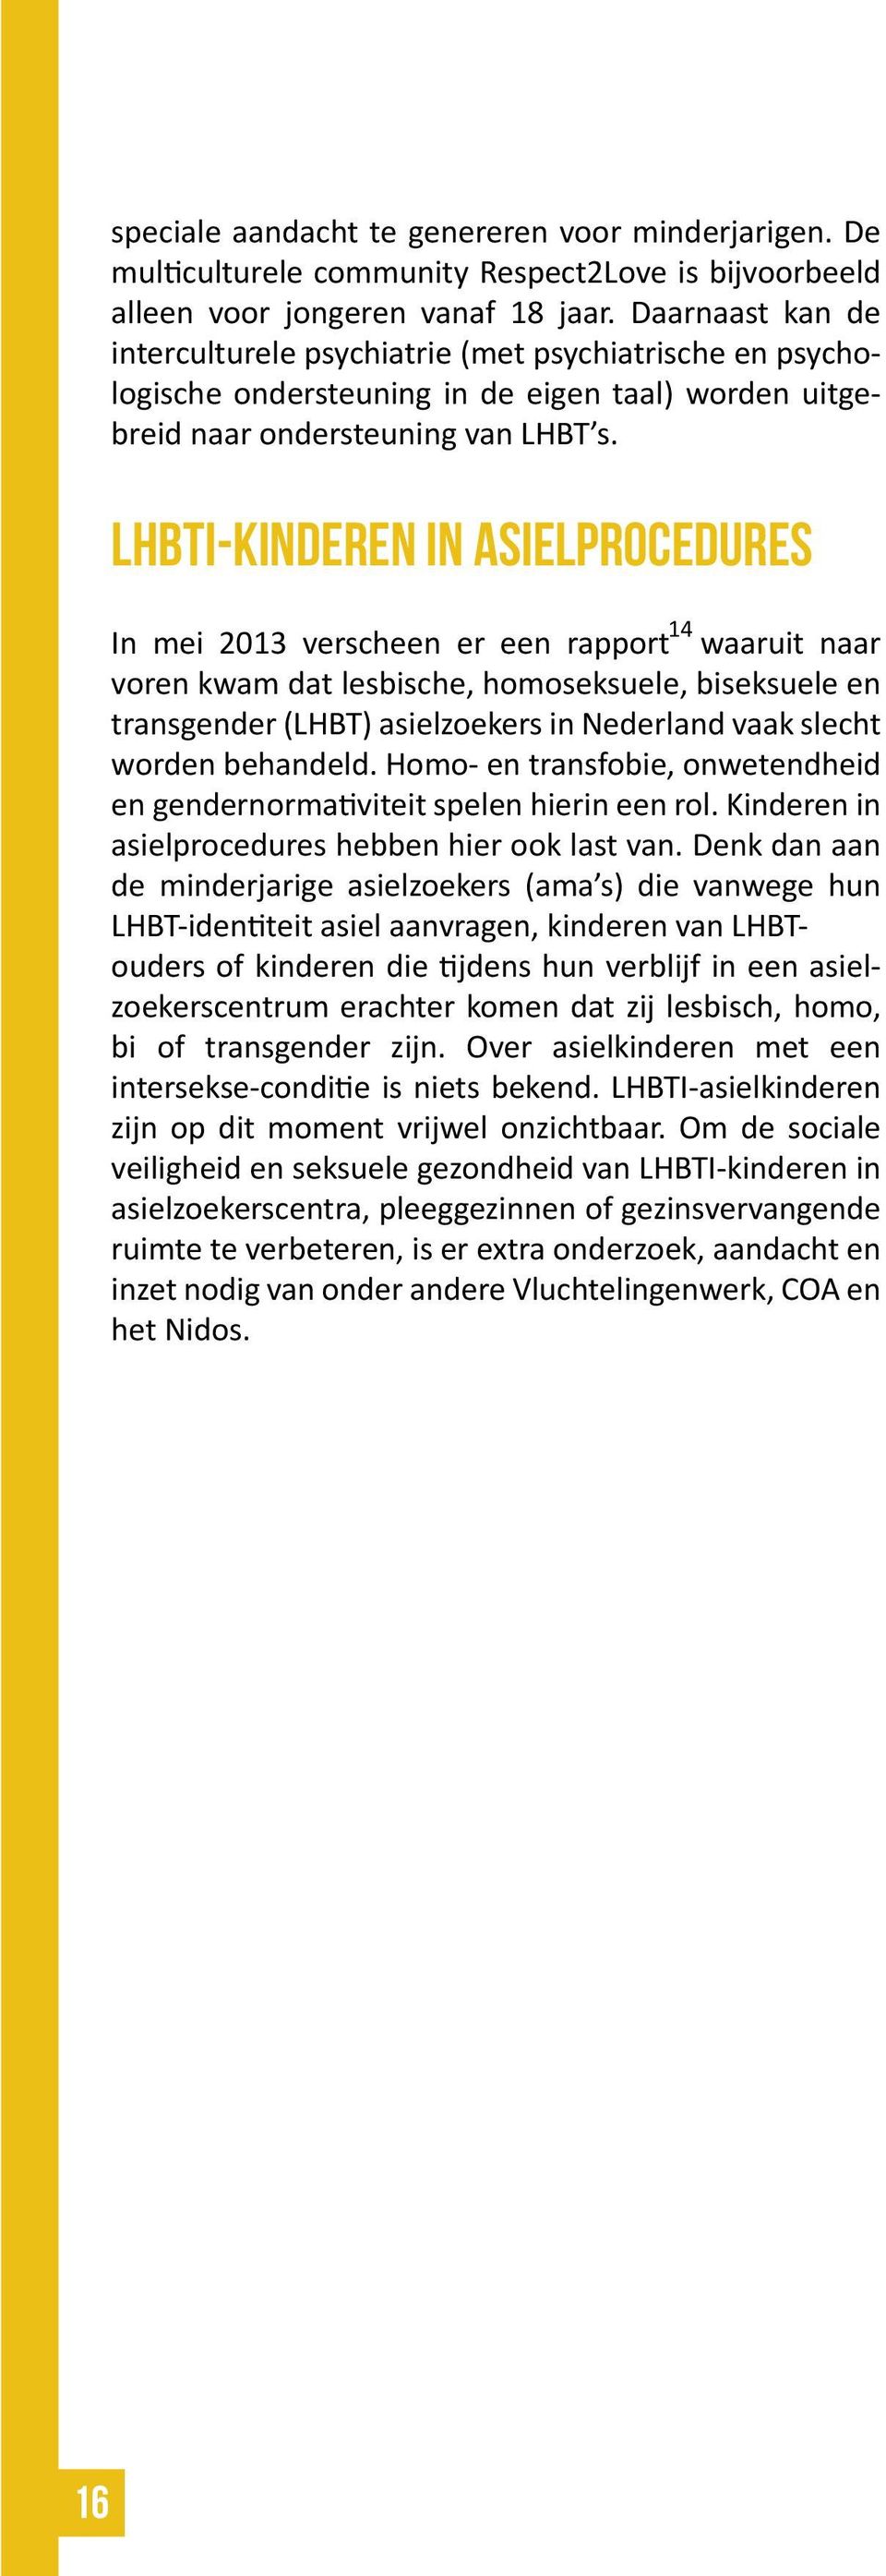 LHBTI-kinderen in asielprocedures 14 In mei 2013 verscheen er een rapport waaruit naar voren kwam dat lesbische, homoseksuele, biseksuele en transgender (LHBT) asielzoekers in Nederland vaak slecht